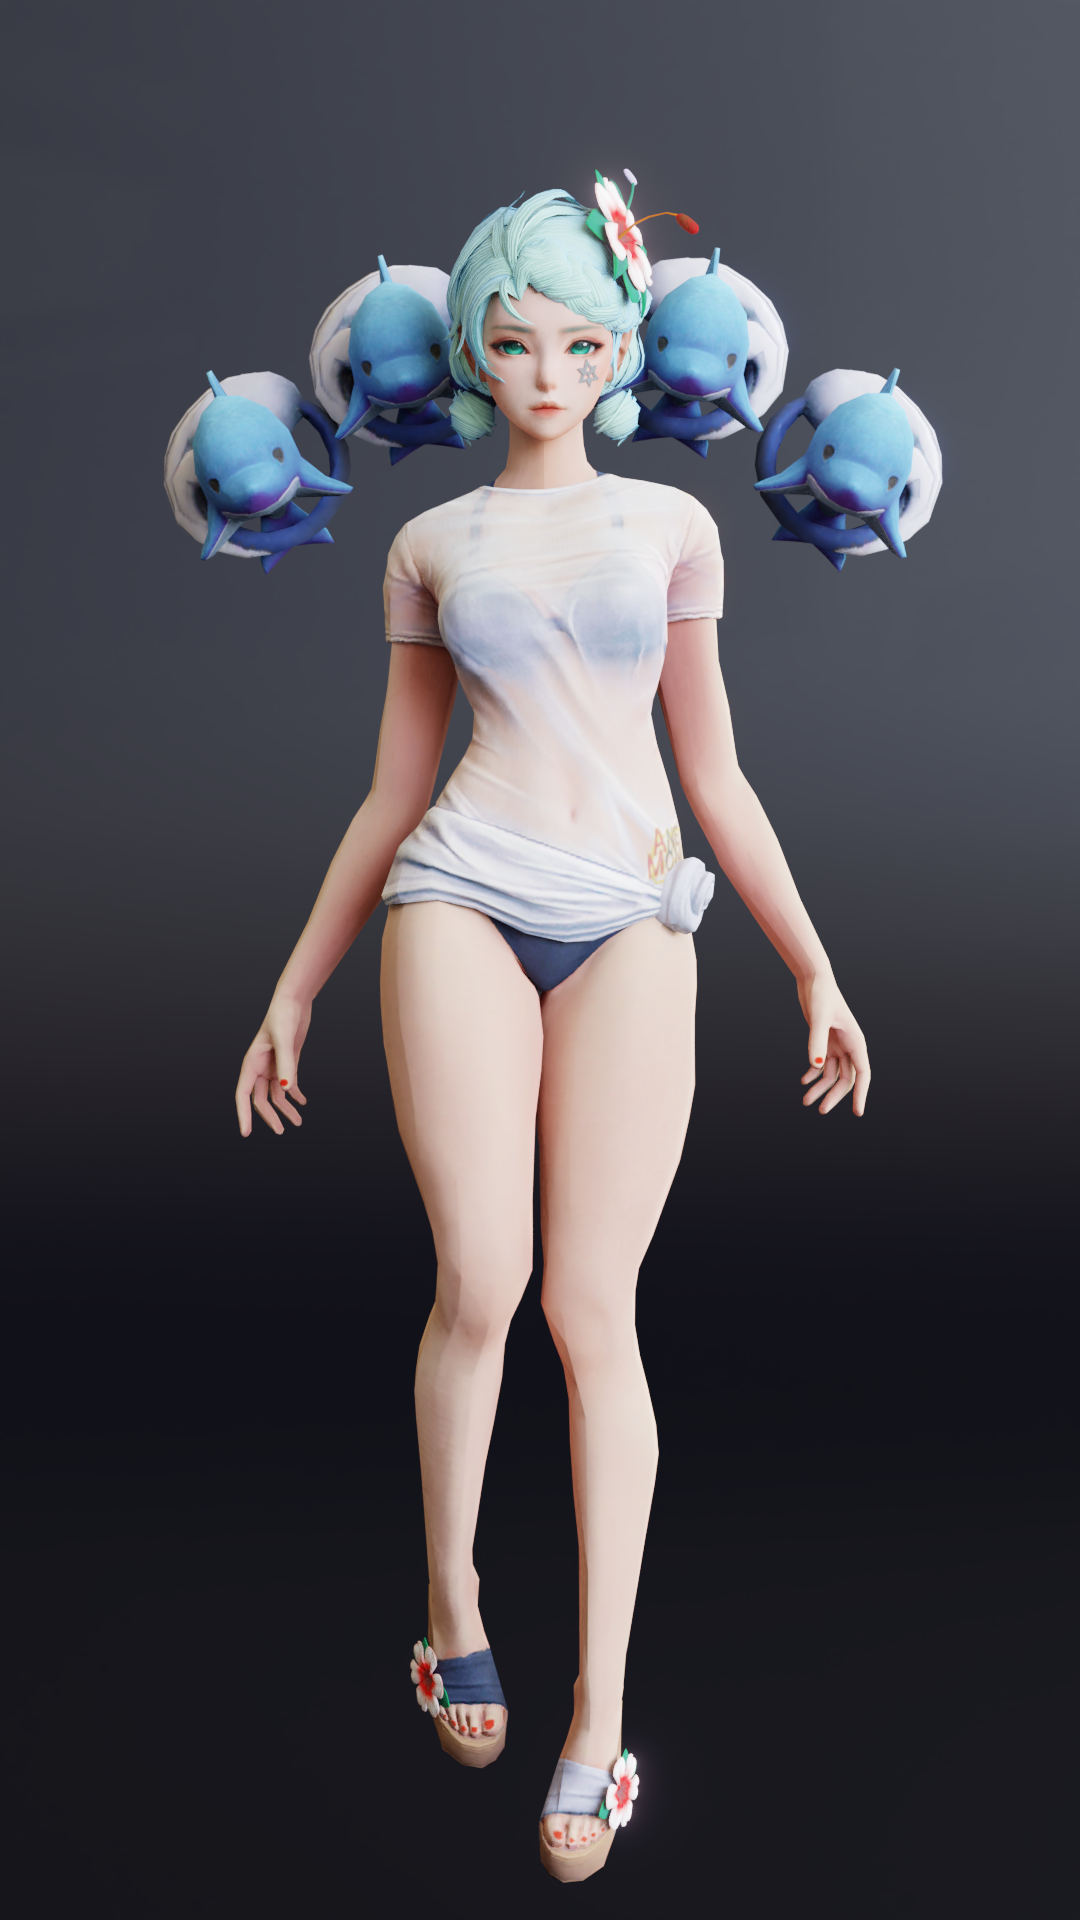 游戏韩风美女角色blender模型插图3